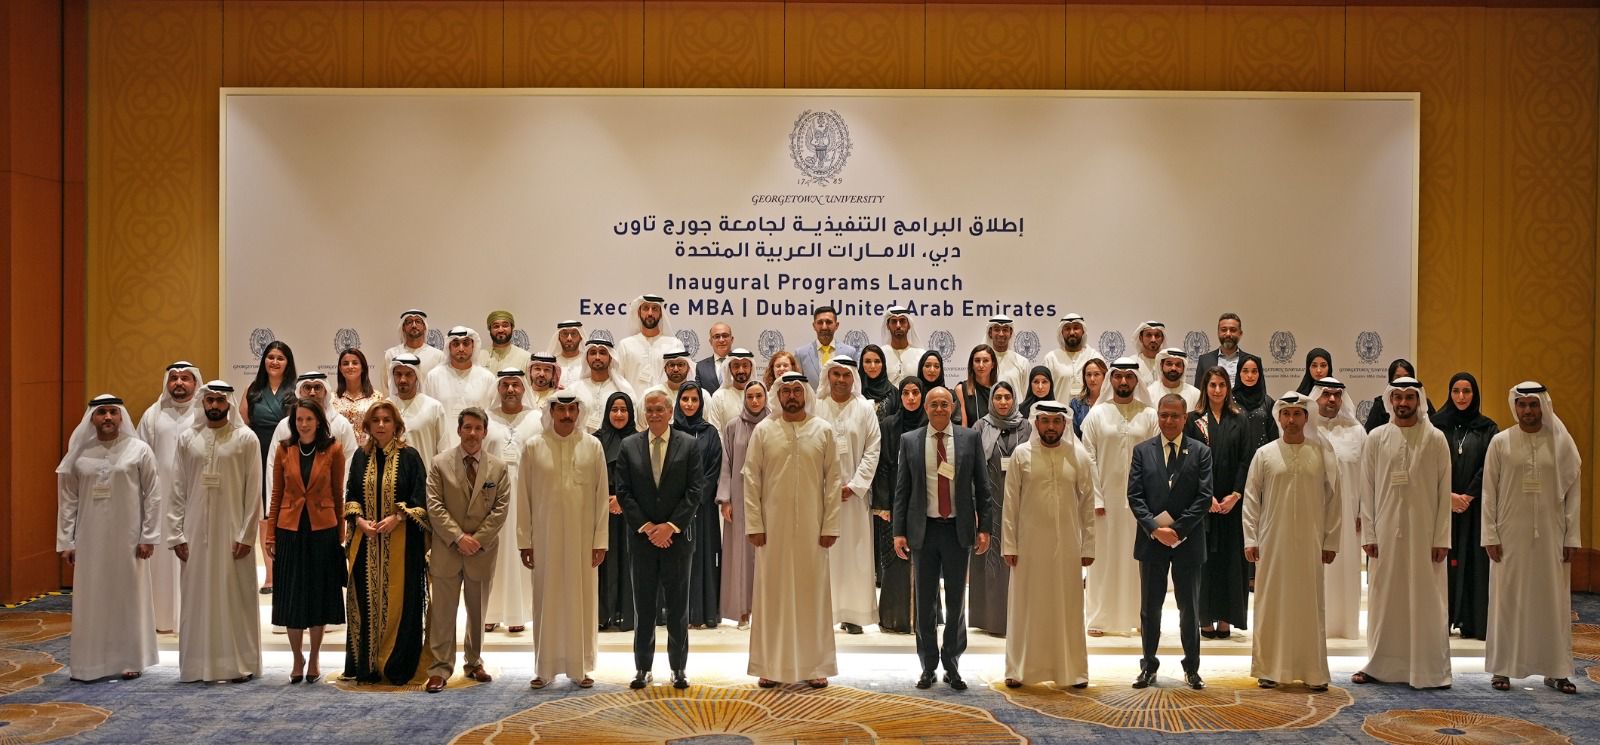 جامعة «جورجتاون» تطلق لأول مرة برامجها التنفيذية للماجستير في الإمارات